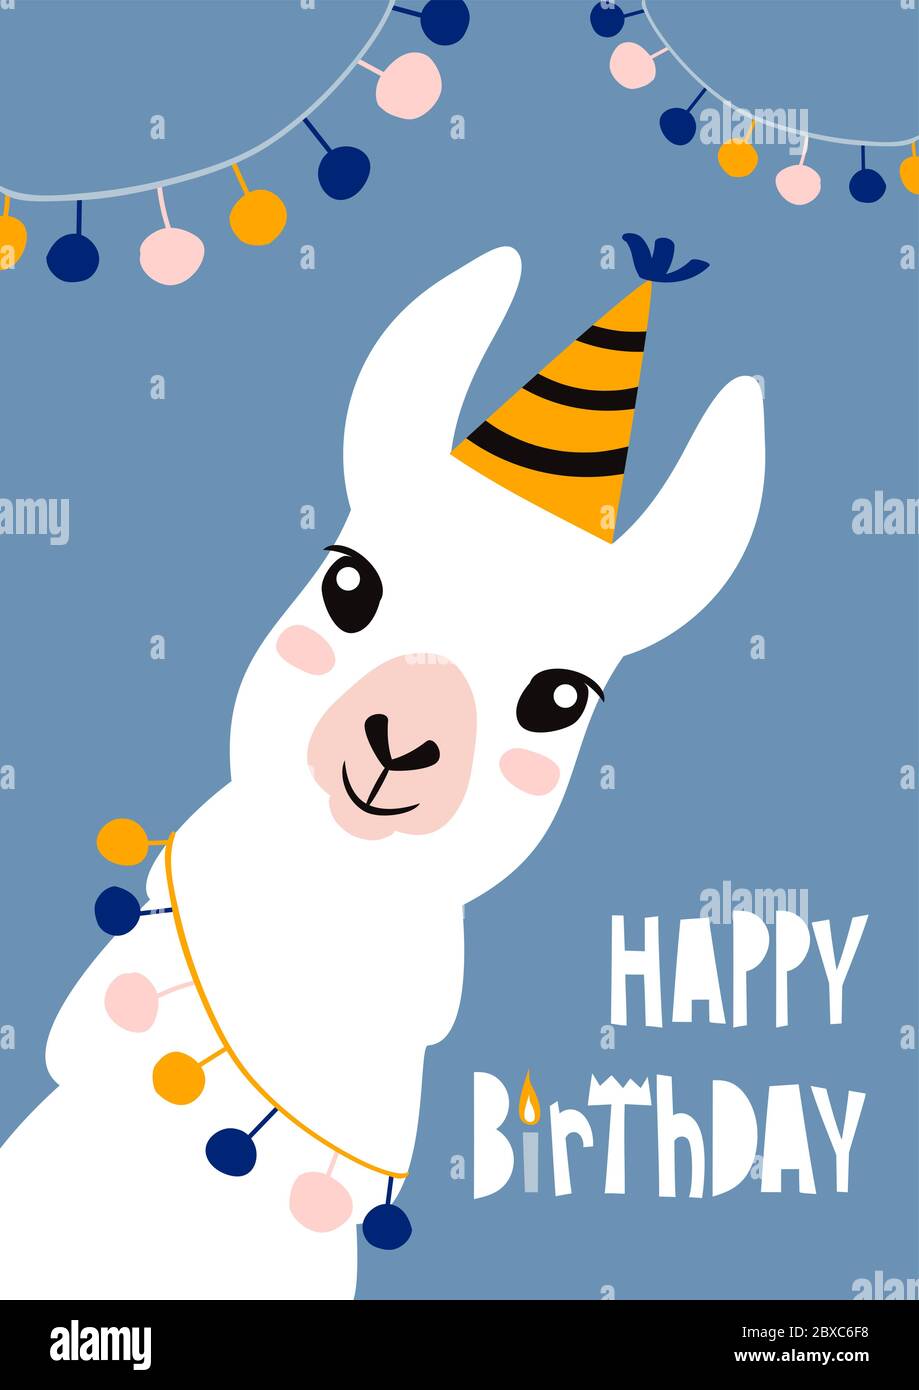 Happy Birthday Karte mit niedlichen Cartoon Lama-Design. Stock Vektor